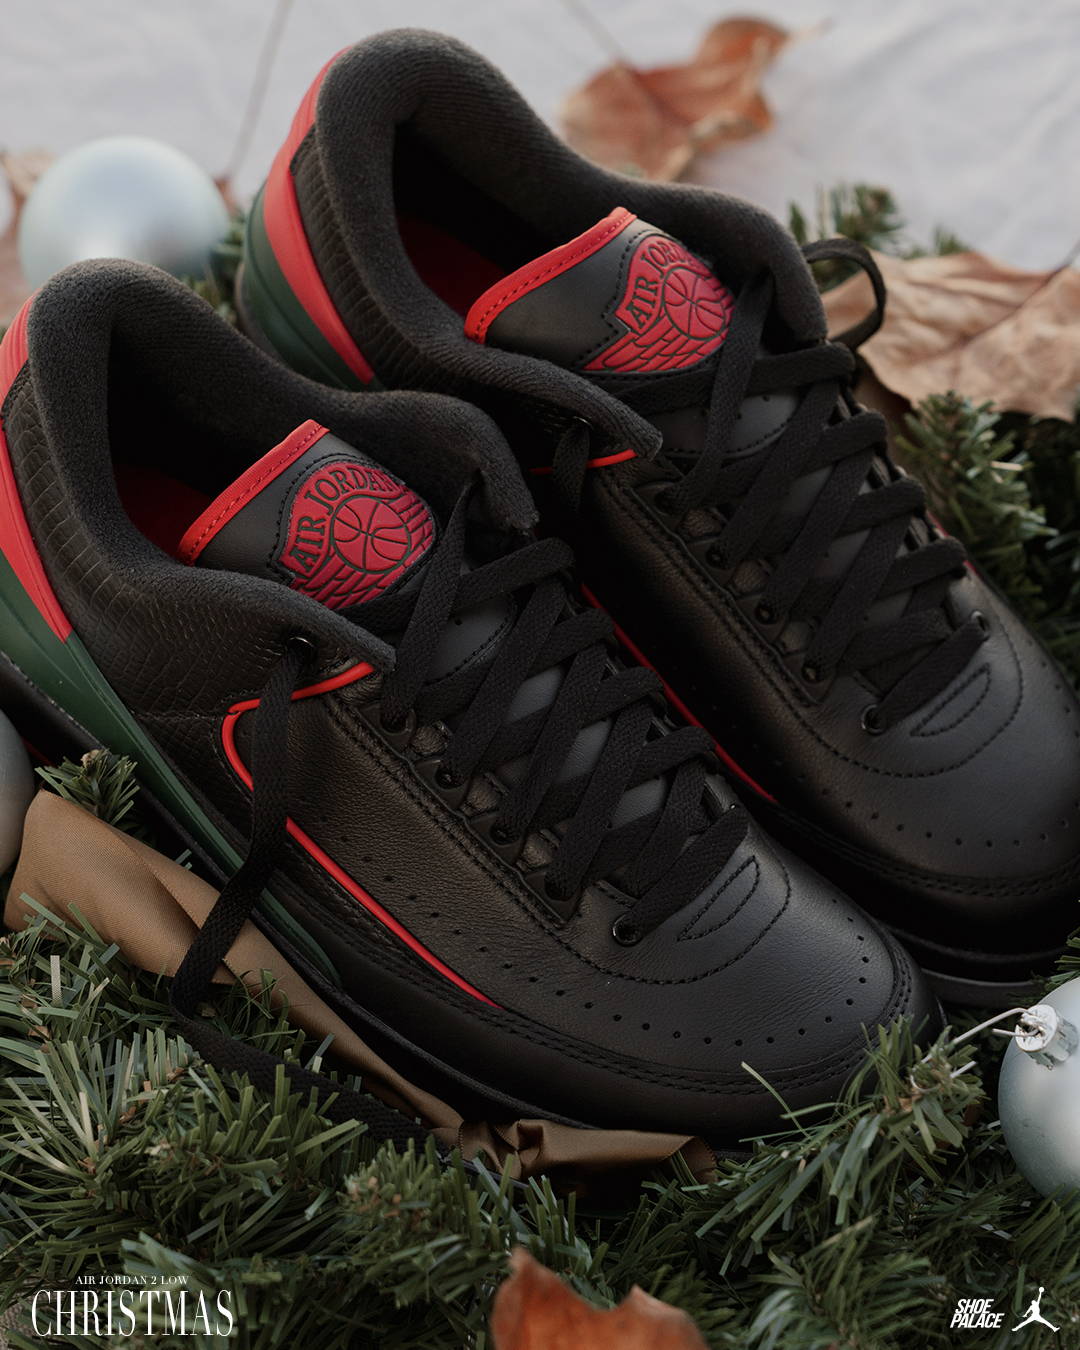 The Air Jordan 2 Low “Christmas” 3